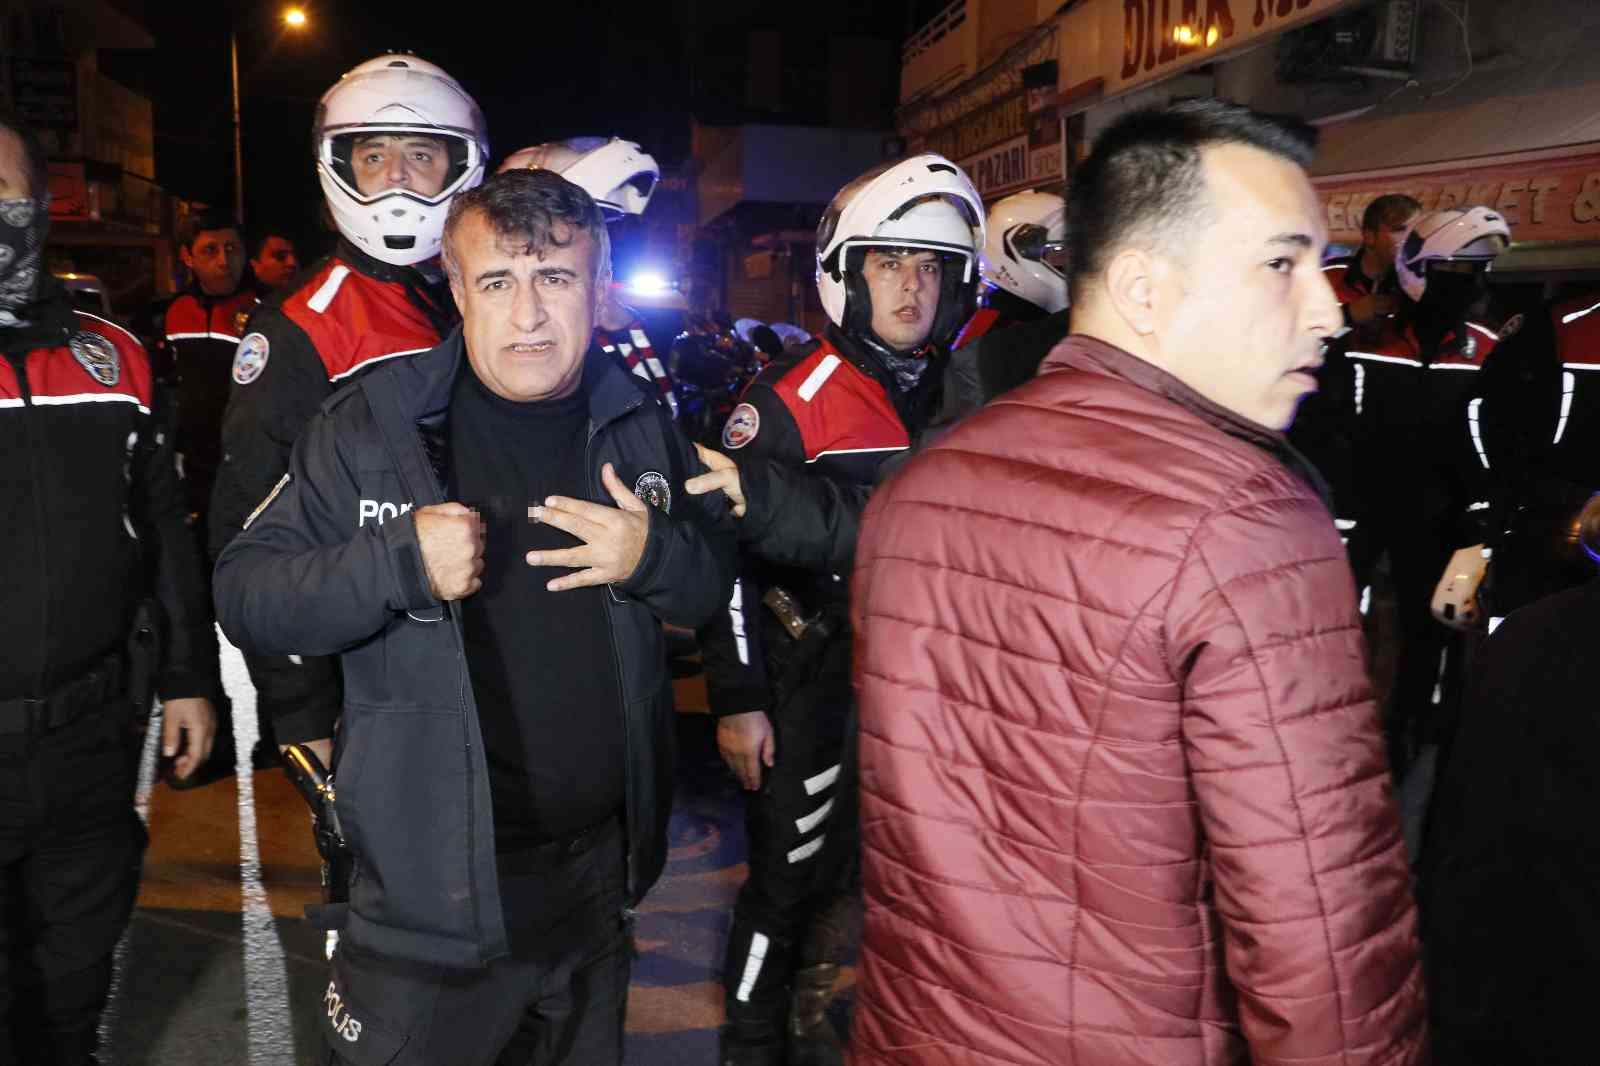 Adana’da polisi bıçaklayan şahıs yakalandı #adana